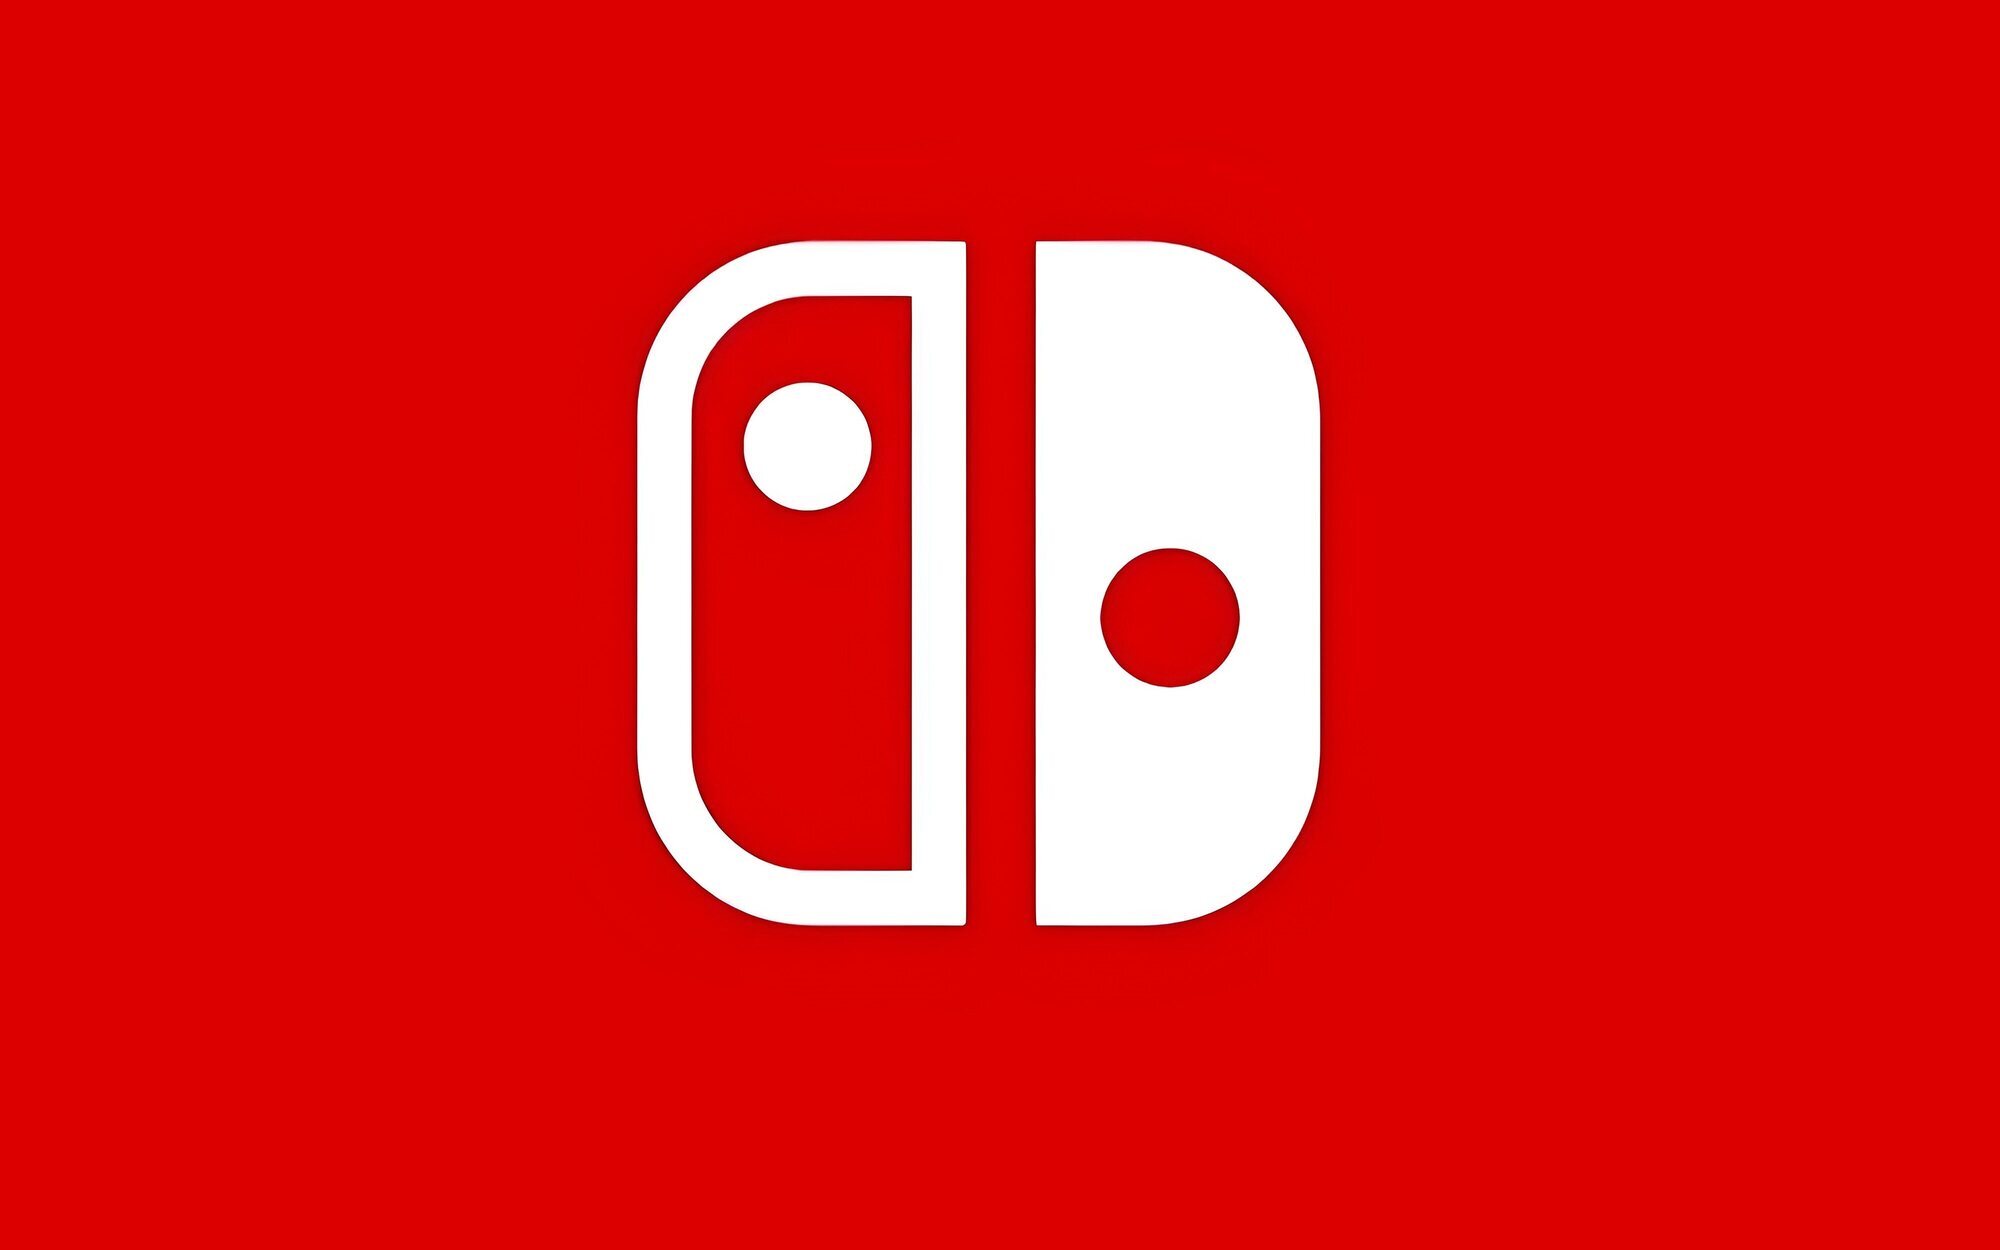 Un nuevo Nintendo Direct llegaría la semana que viene, según un creador de contenido